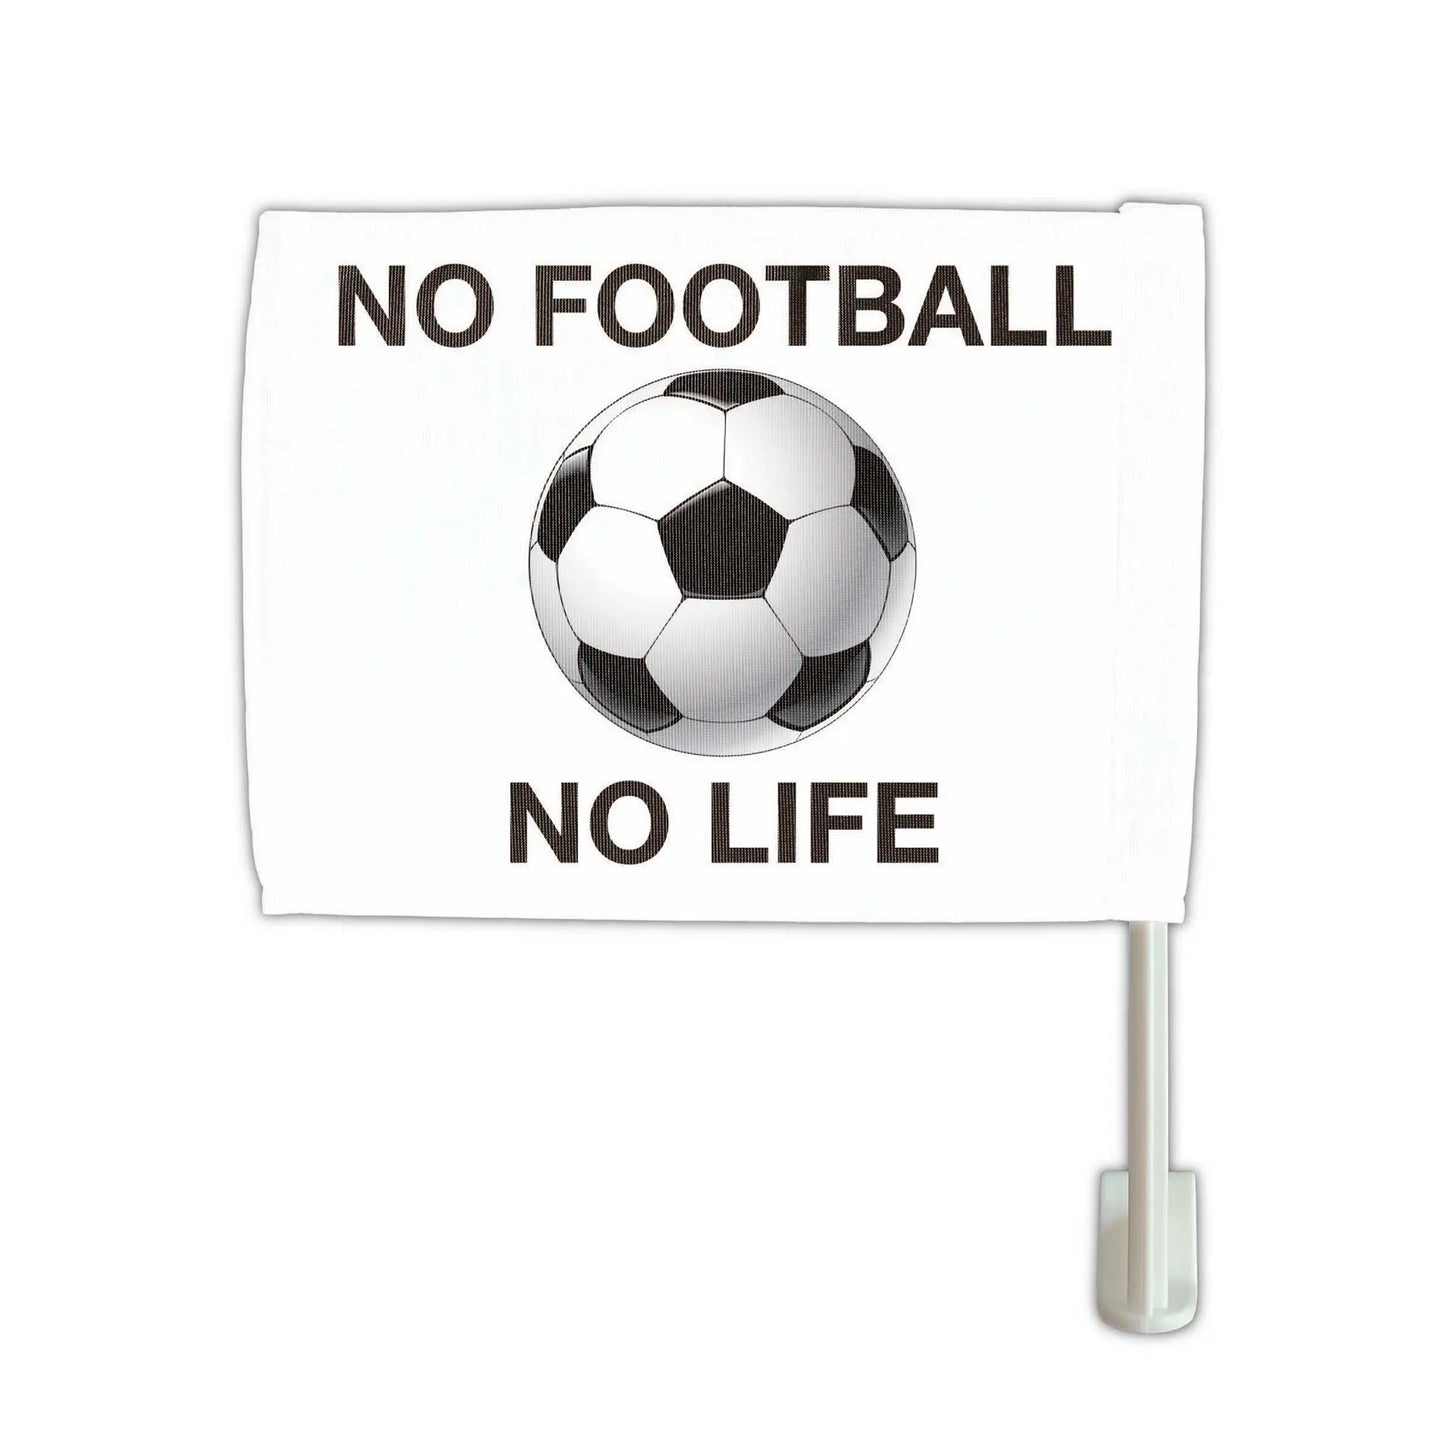 【カーフラッグ】FOOTBALL/サッカー・フットボール/自動車用オリジナルフラッグ・旗 PL8HERO